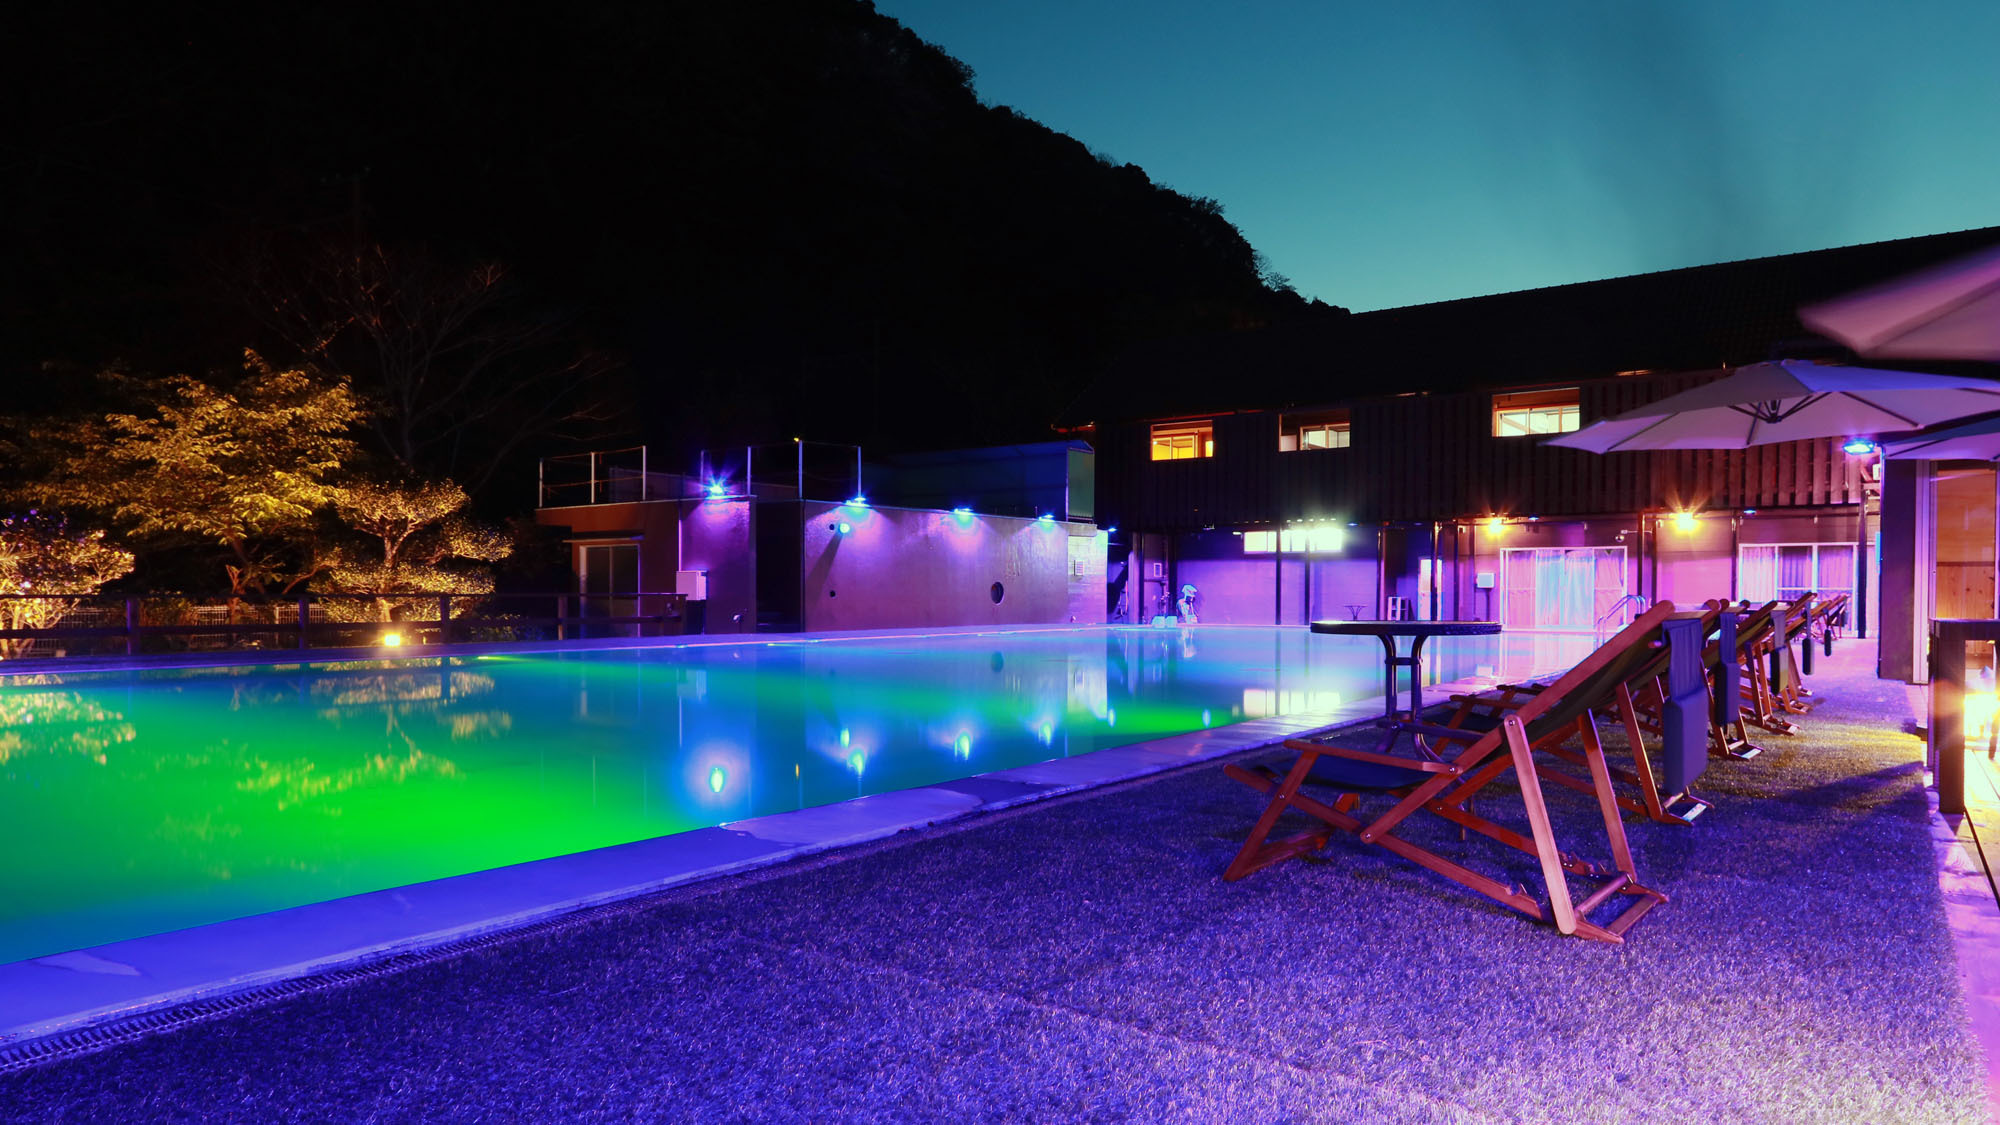 ナイトプール -Night pool-プールサイドから空—ライトを眺める、特別な時間